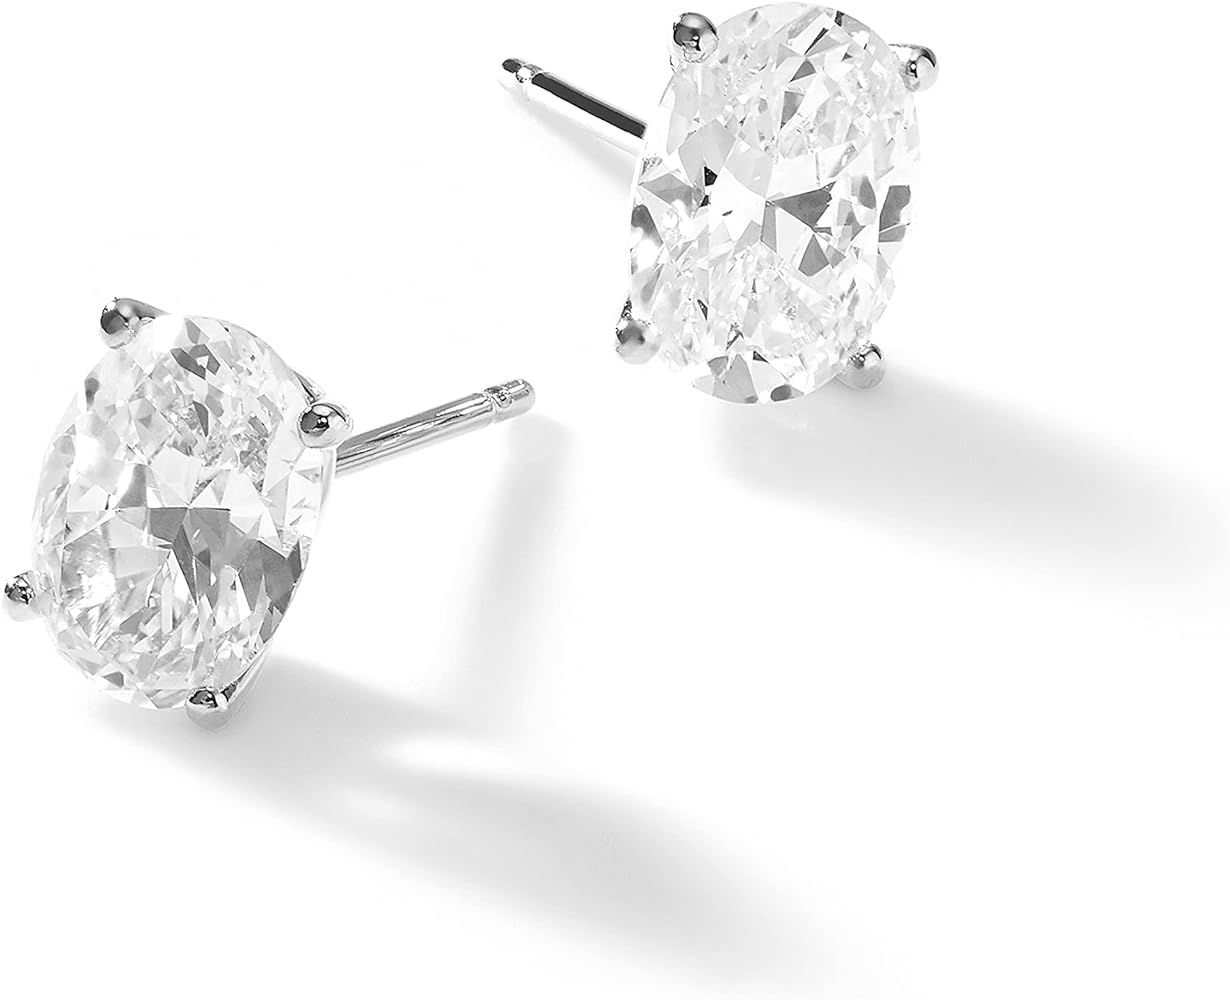 Nadri Oval Stud Earrings - 18k Rhodium Sterling Silver Stud Earrings for Women, Large Oval Cubic ... | Amazon (US)